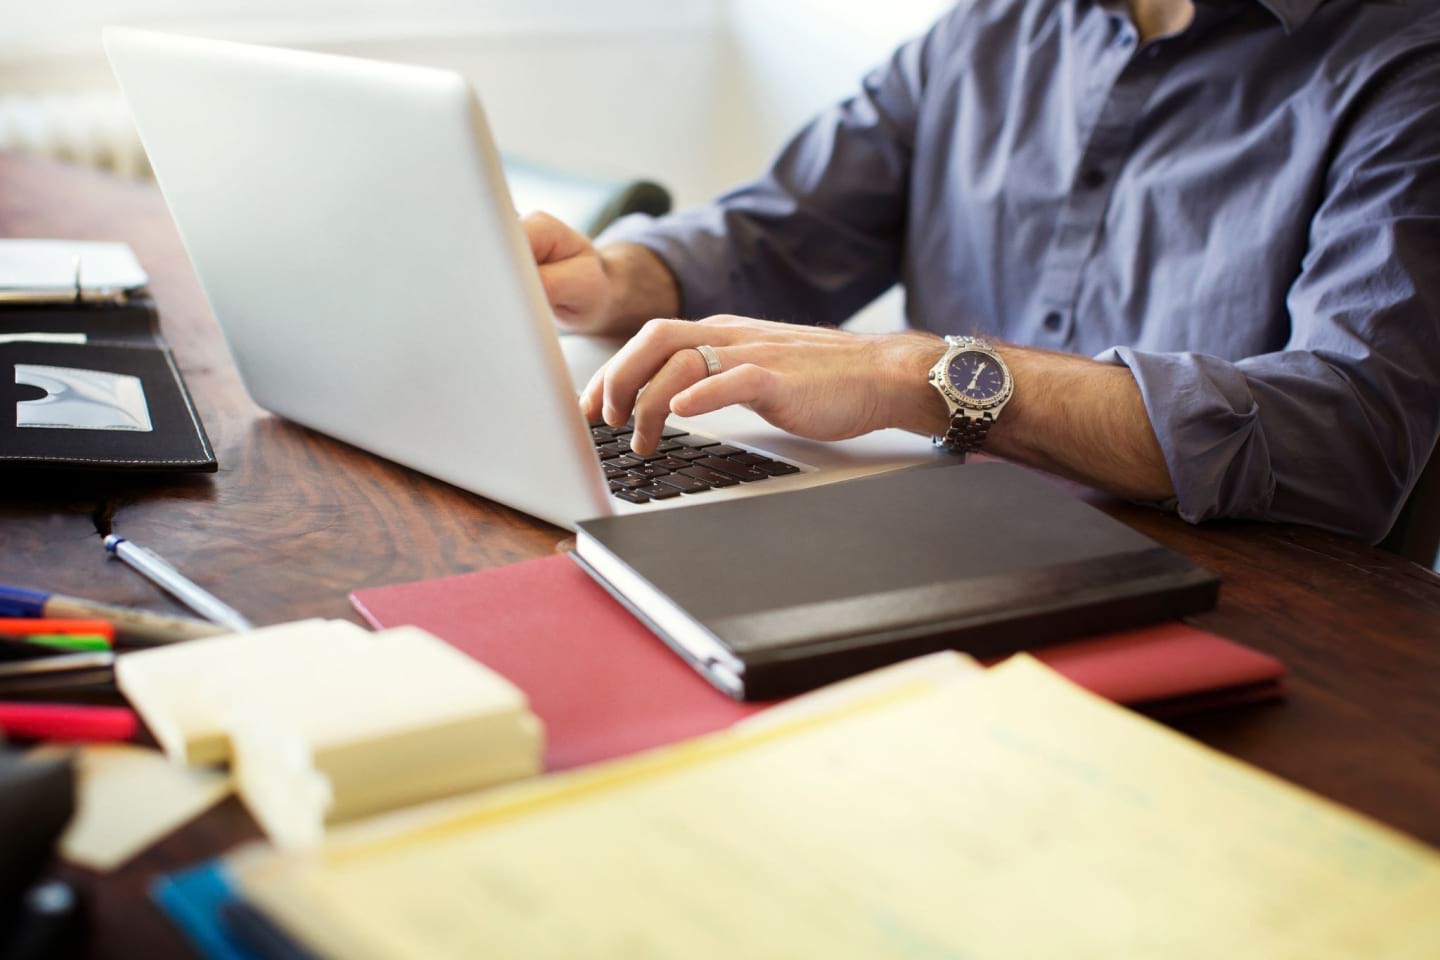 Eine Person arbeitet an einem Laptop auf einem Schreibtisch mit Stiften, Haftnotizen und Notizbüchern.